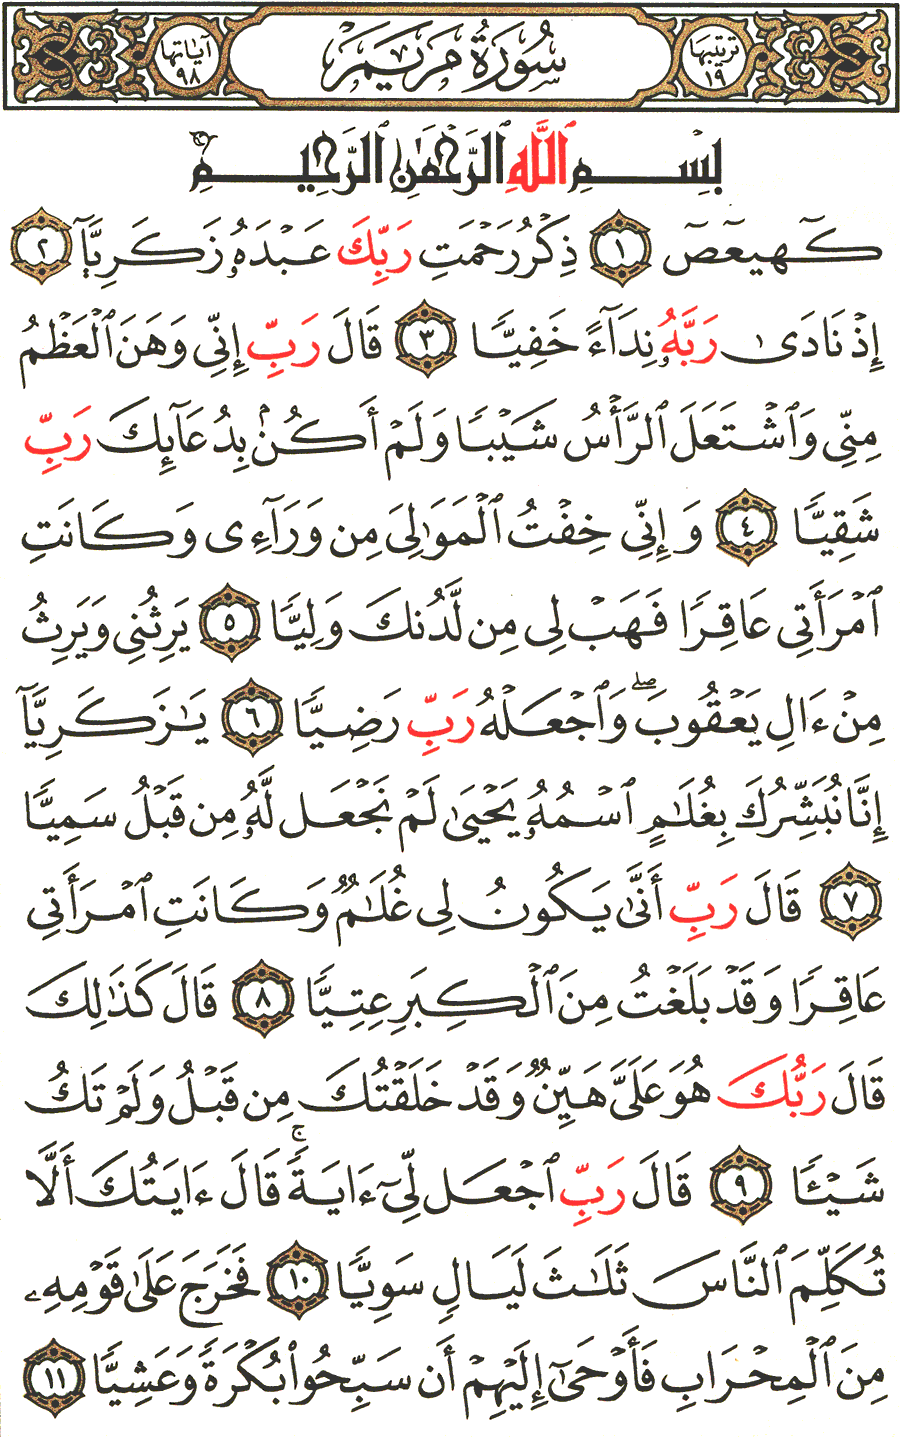 الصفحة رقم 305  من القرآن الكريم مكتوبة من المصحف